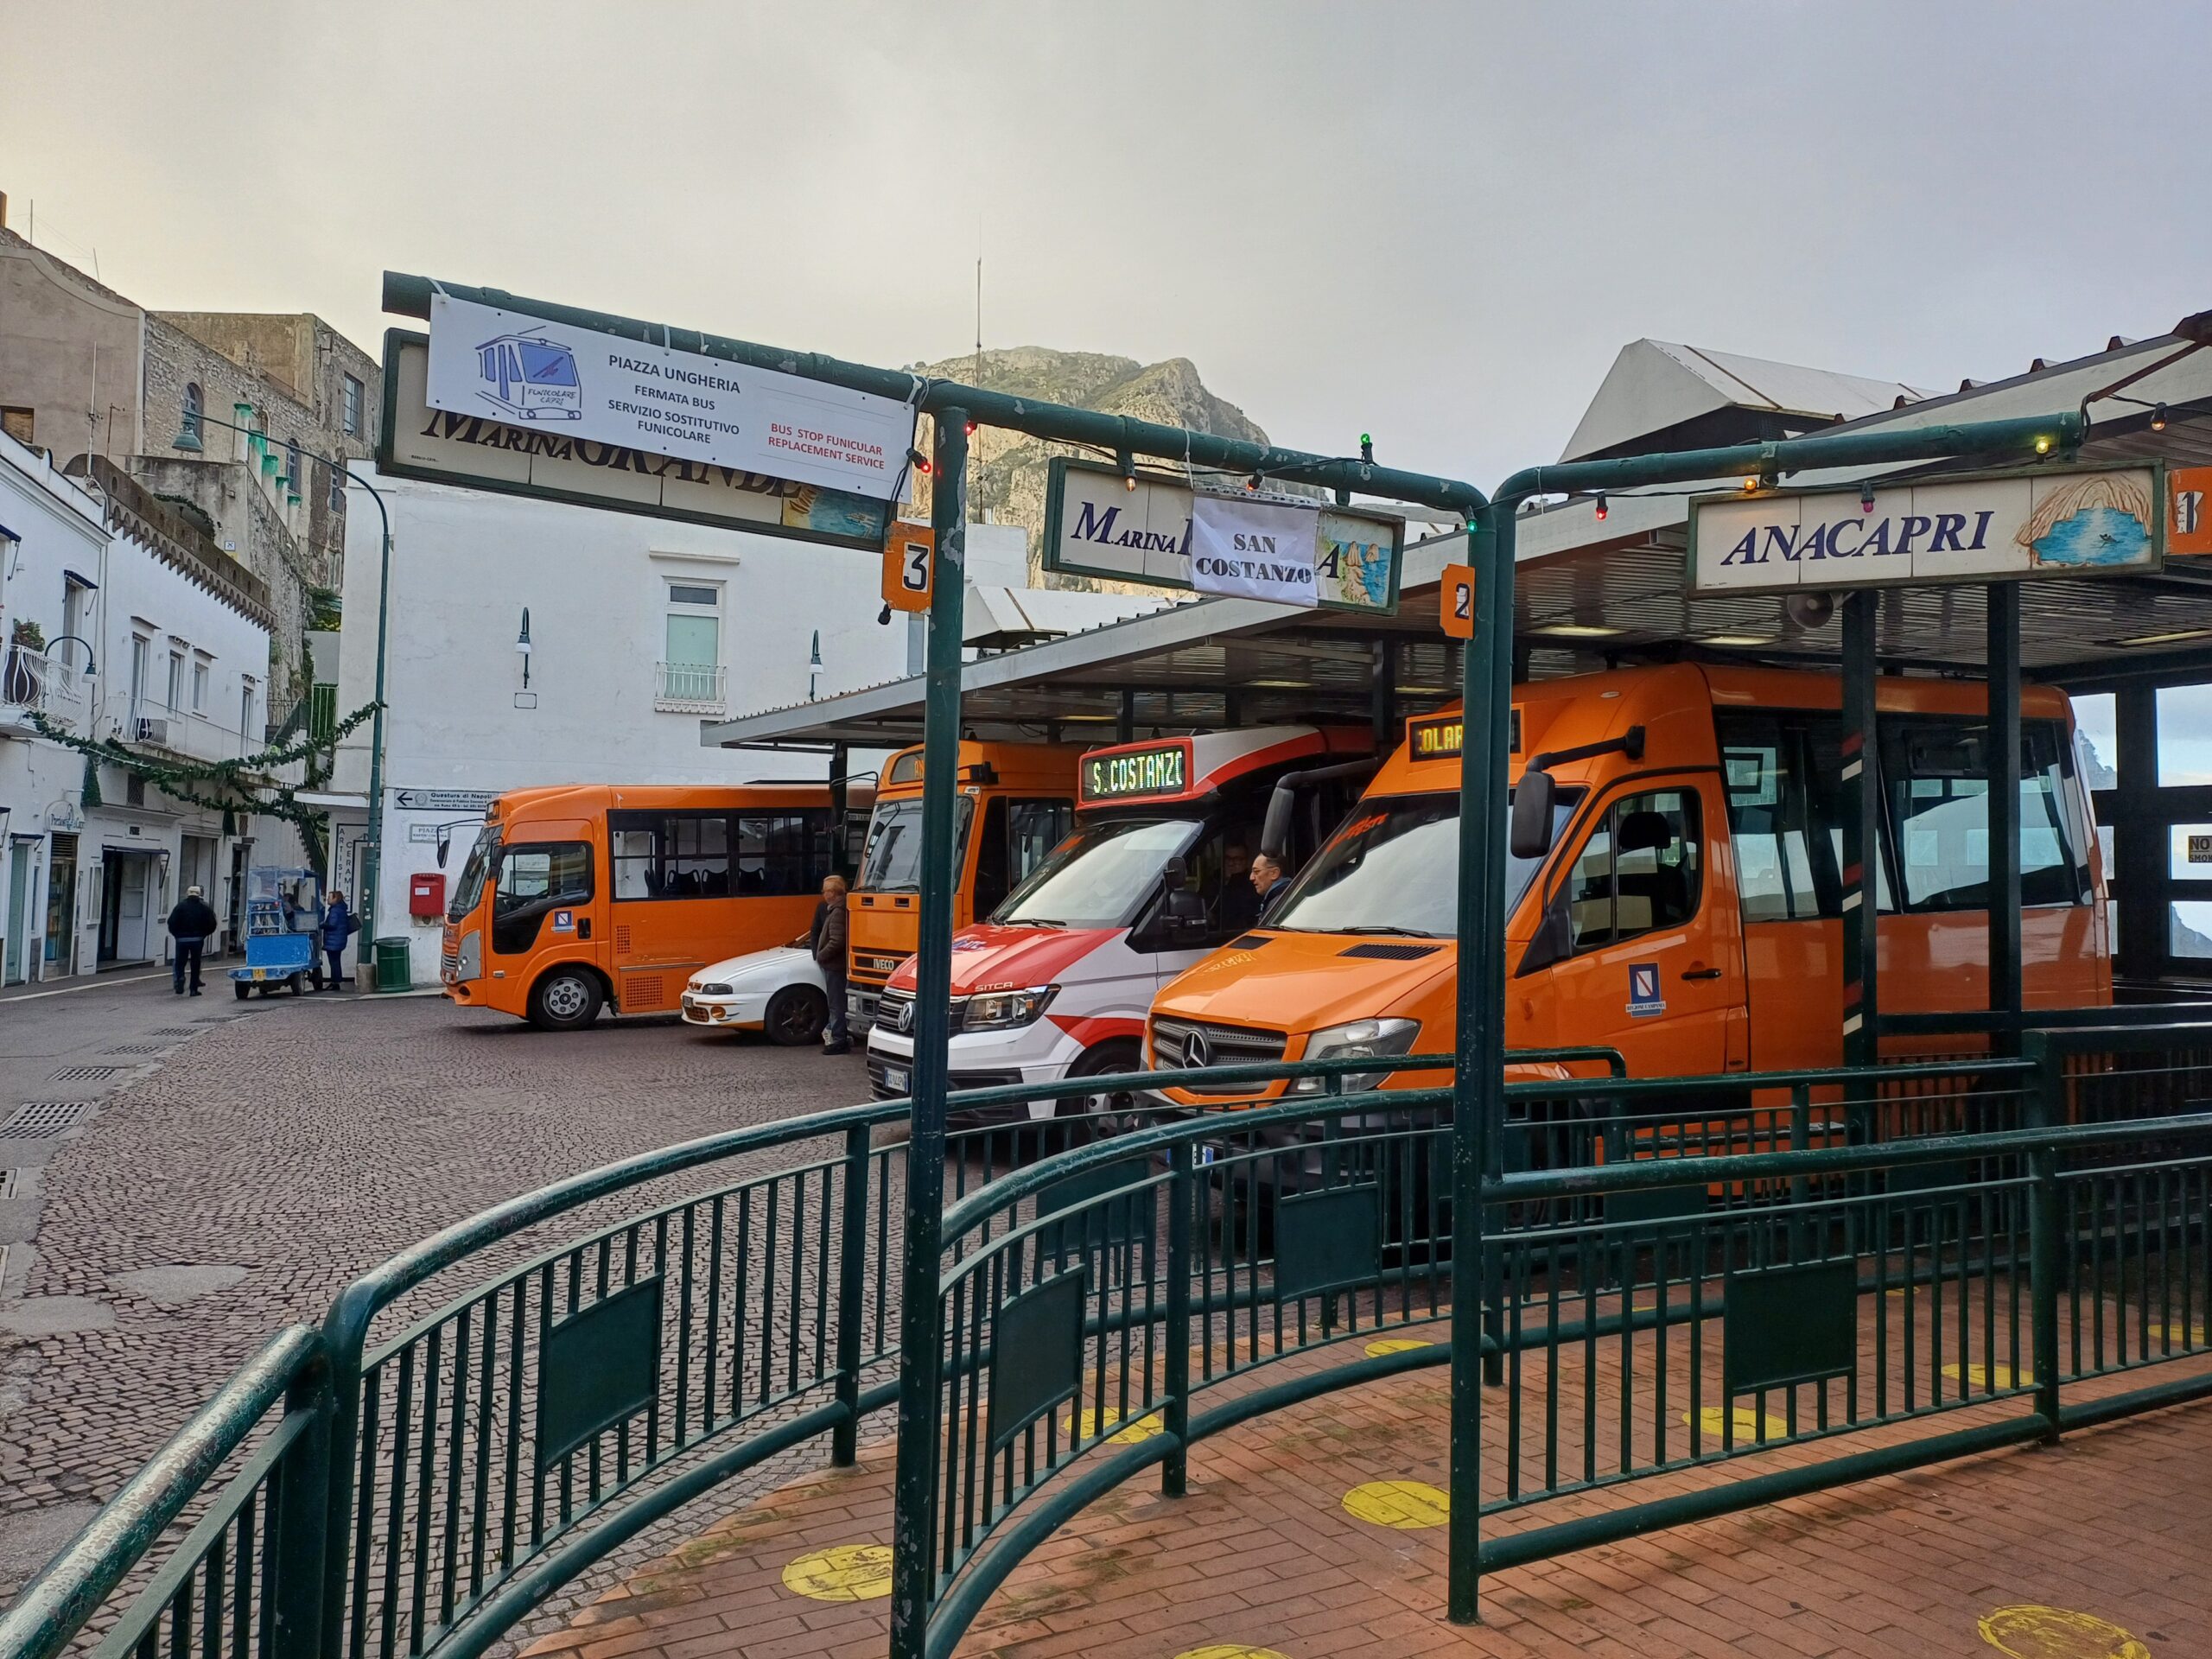 Servizio bus sempre più caro a Capri: l’Atc chiede ben 5 euro per il rinnovo annuale delle card, utenza in subbuglio